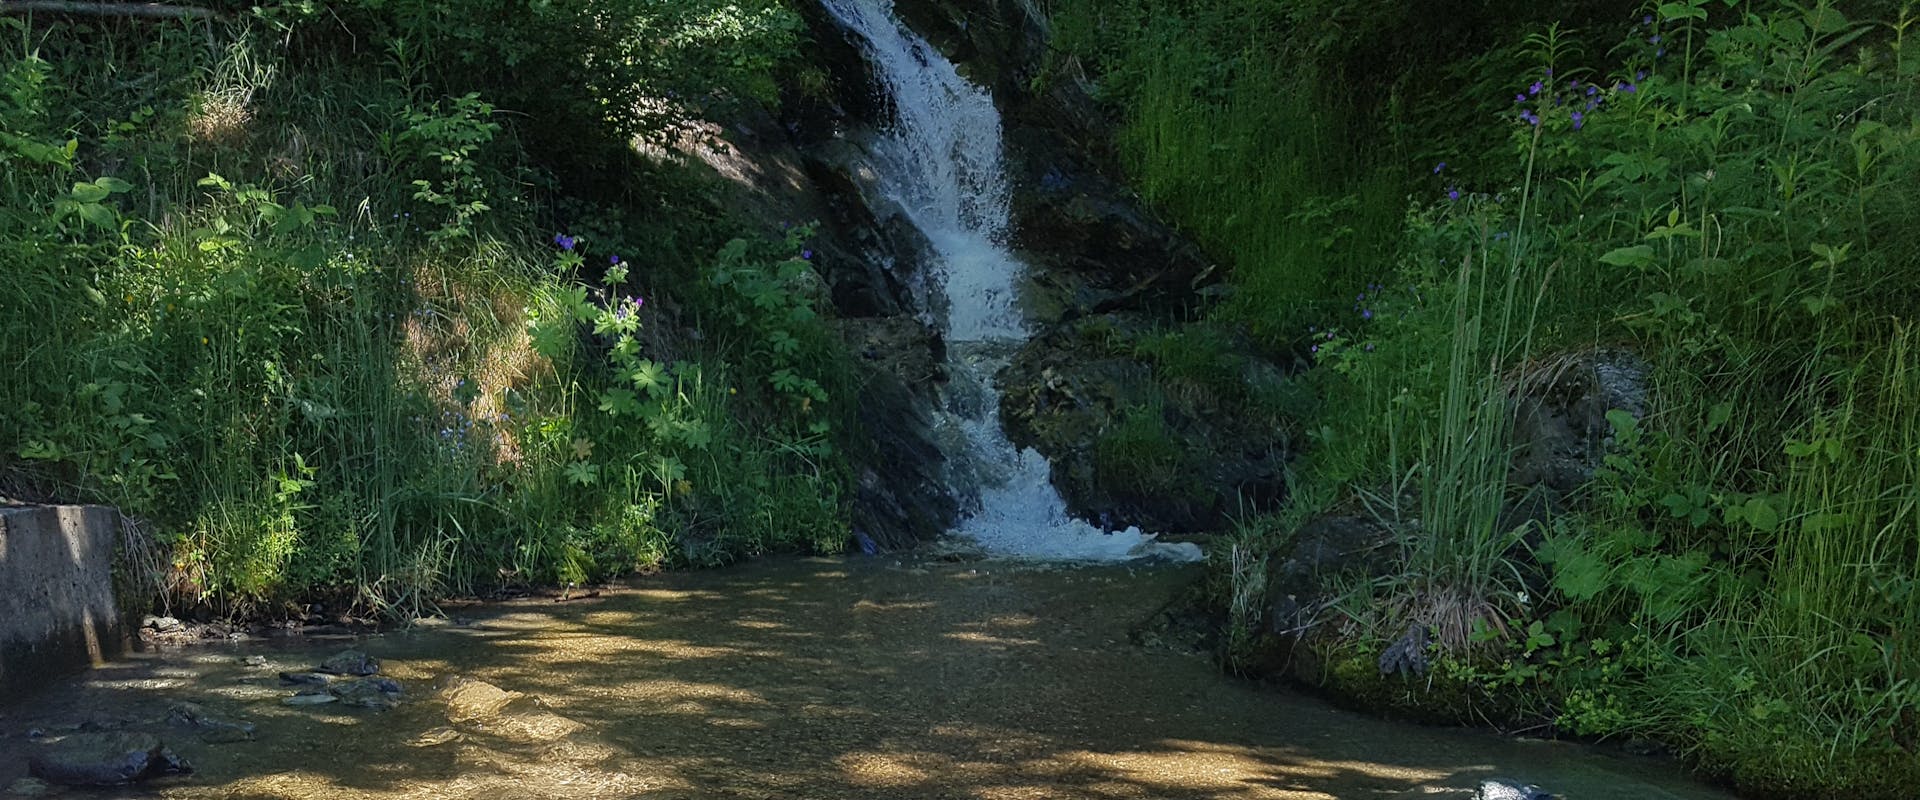 Blick auf einen kleinen Wasserfall in einem Berggebiet